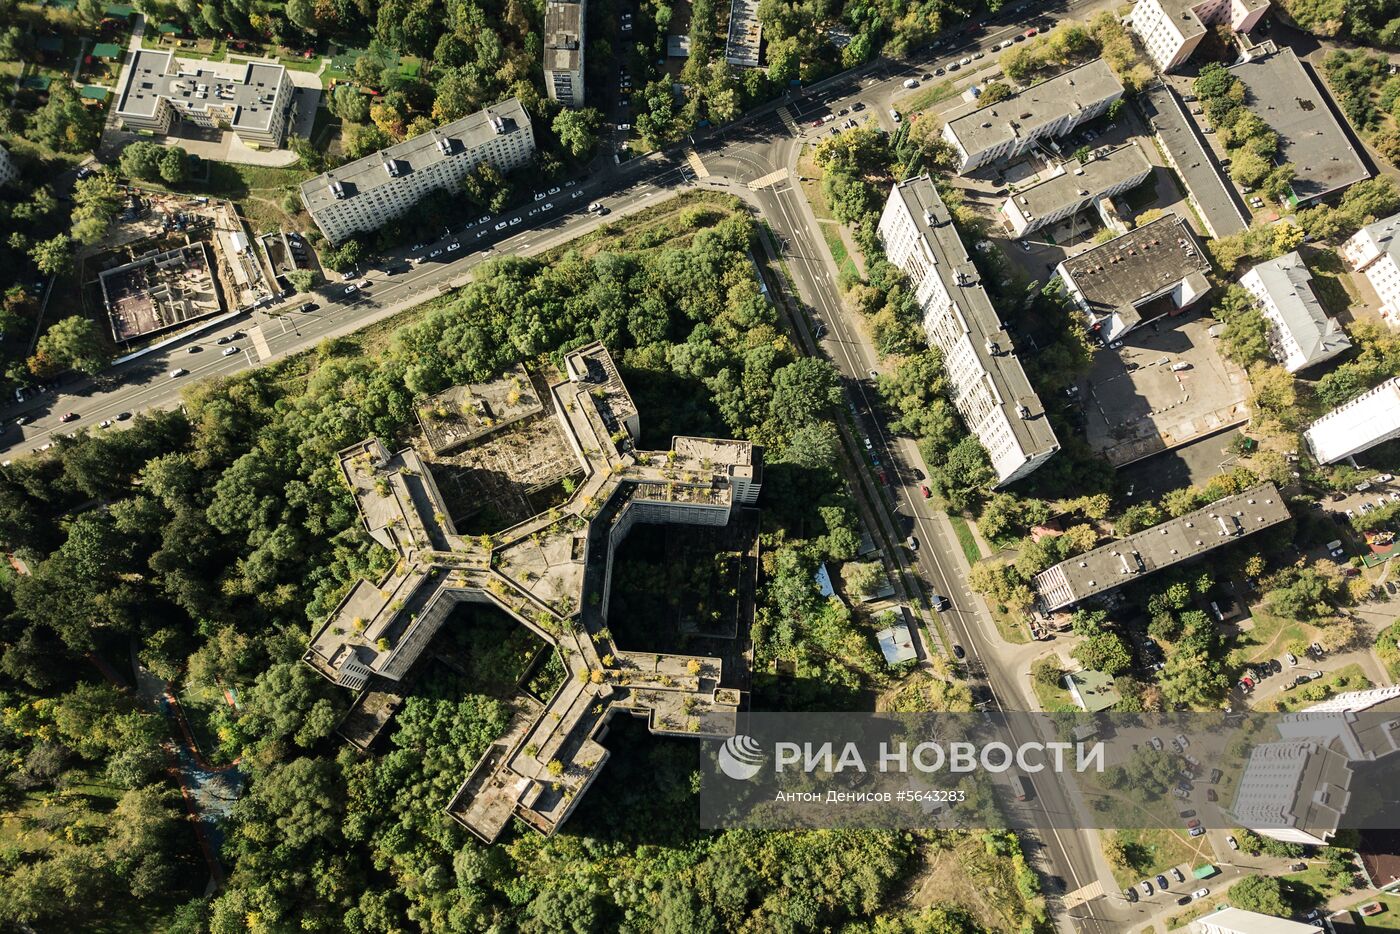 Ховринская  больница  в Москве